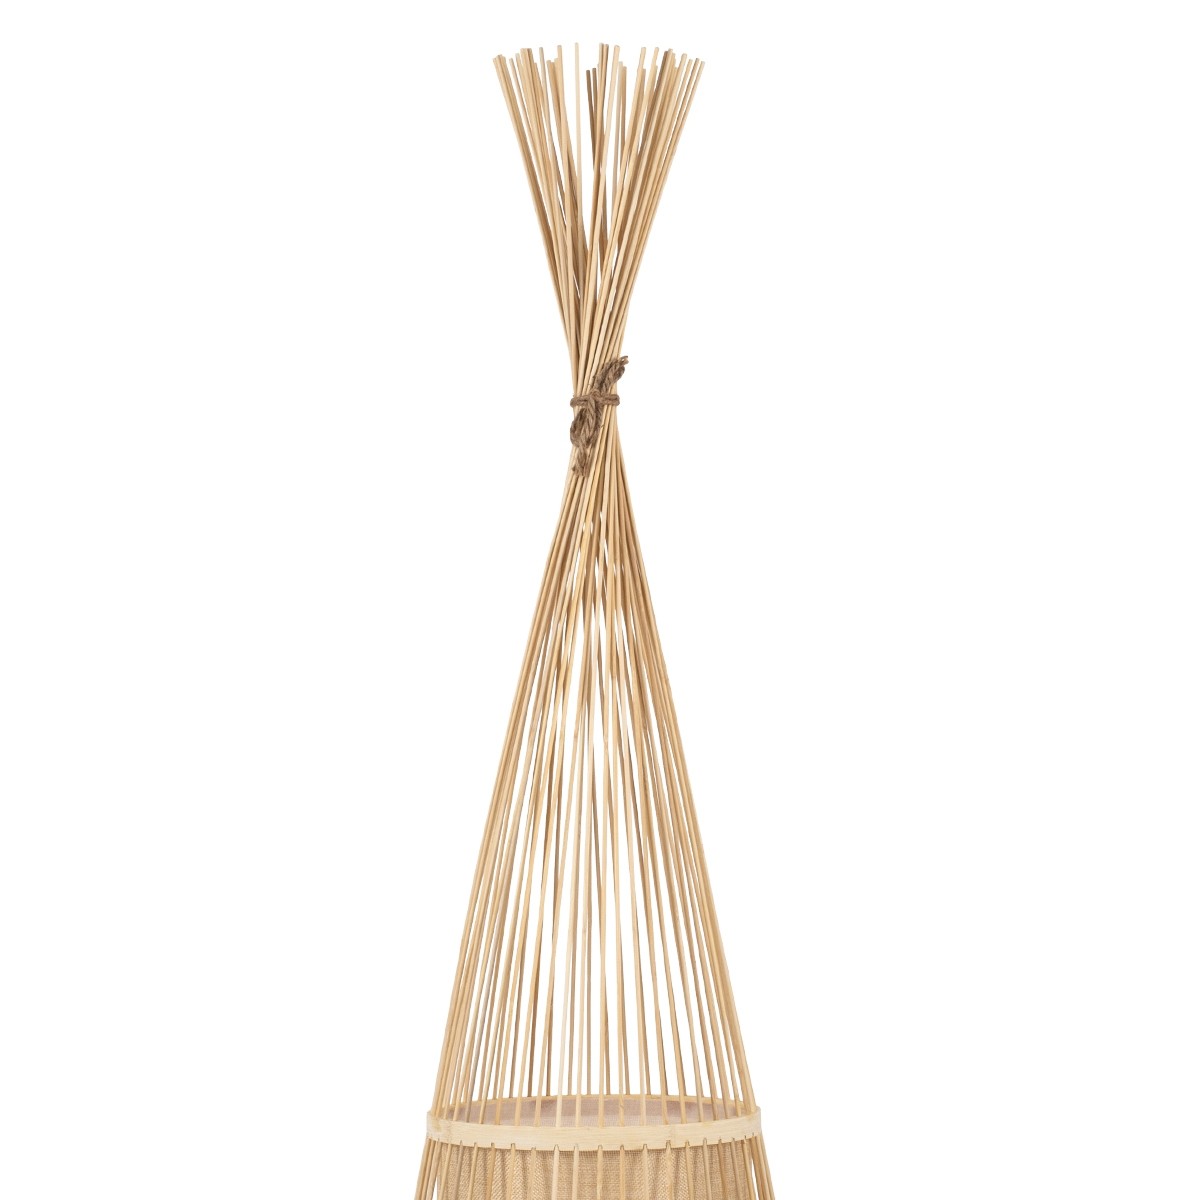 Δαπέδου Φωτιστικό AZORES Μονόφωτο Μπεζ Ξύλινο Bamboo Πλέγμα Φ40 x Υ150cm 01755